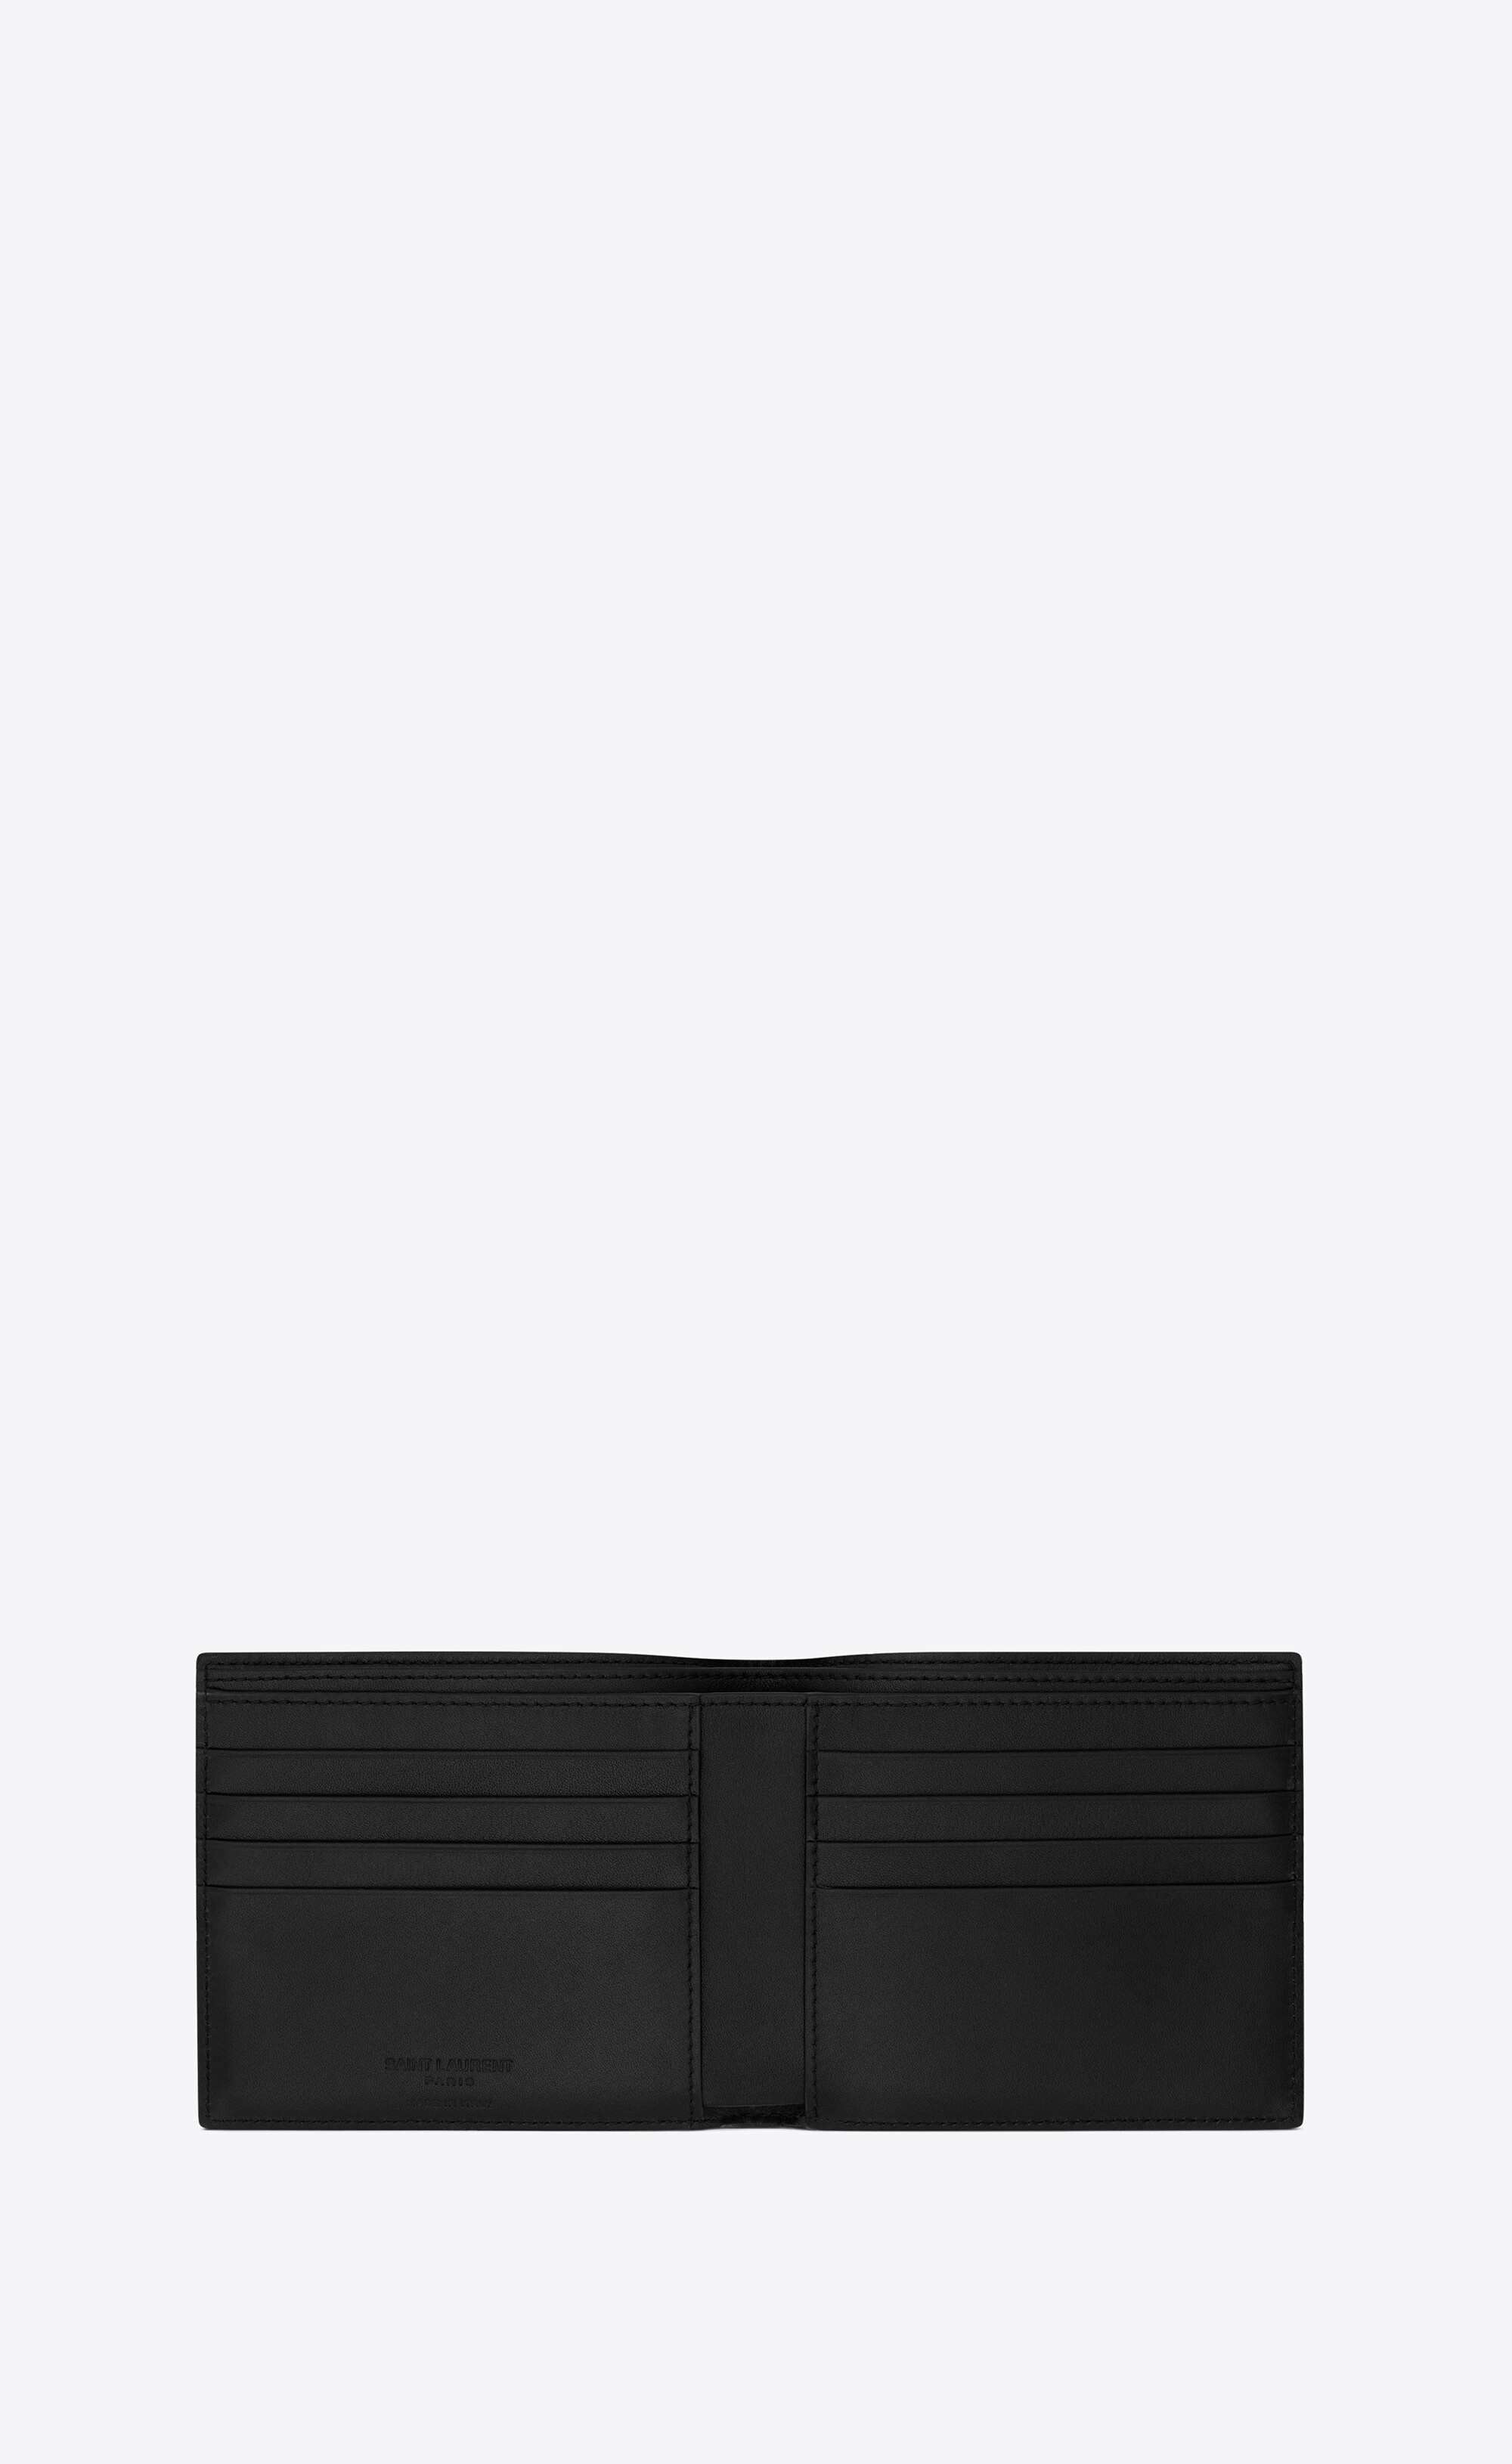 Saint Laurent | Men East/West Leather Wallet Black Unique